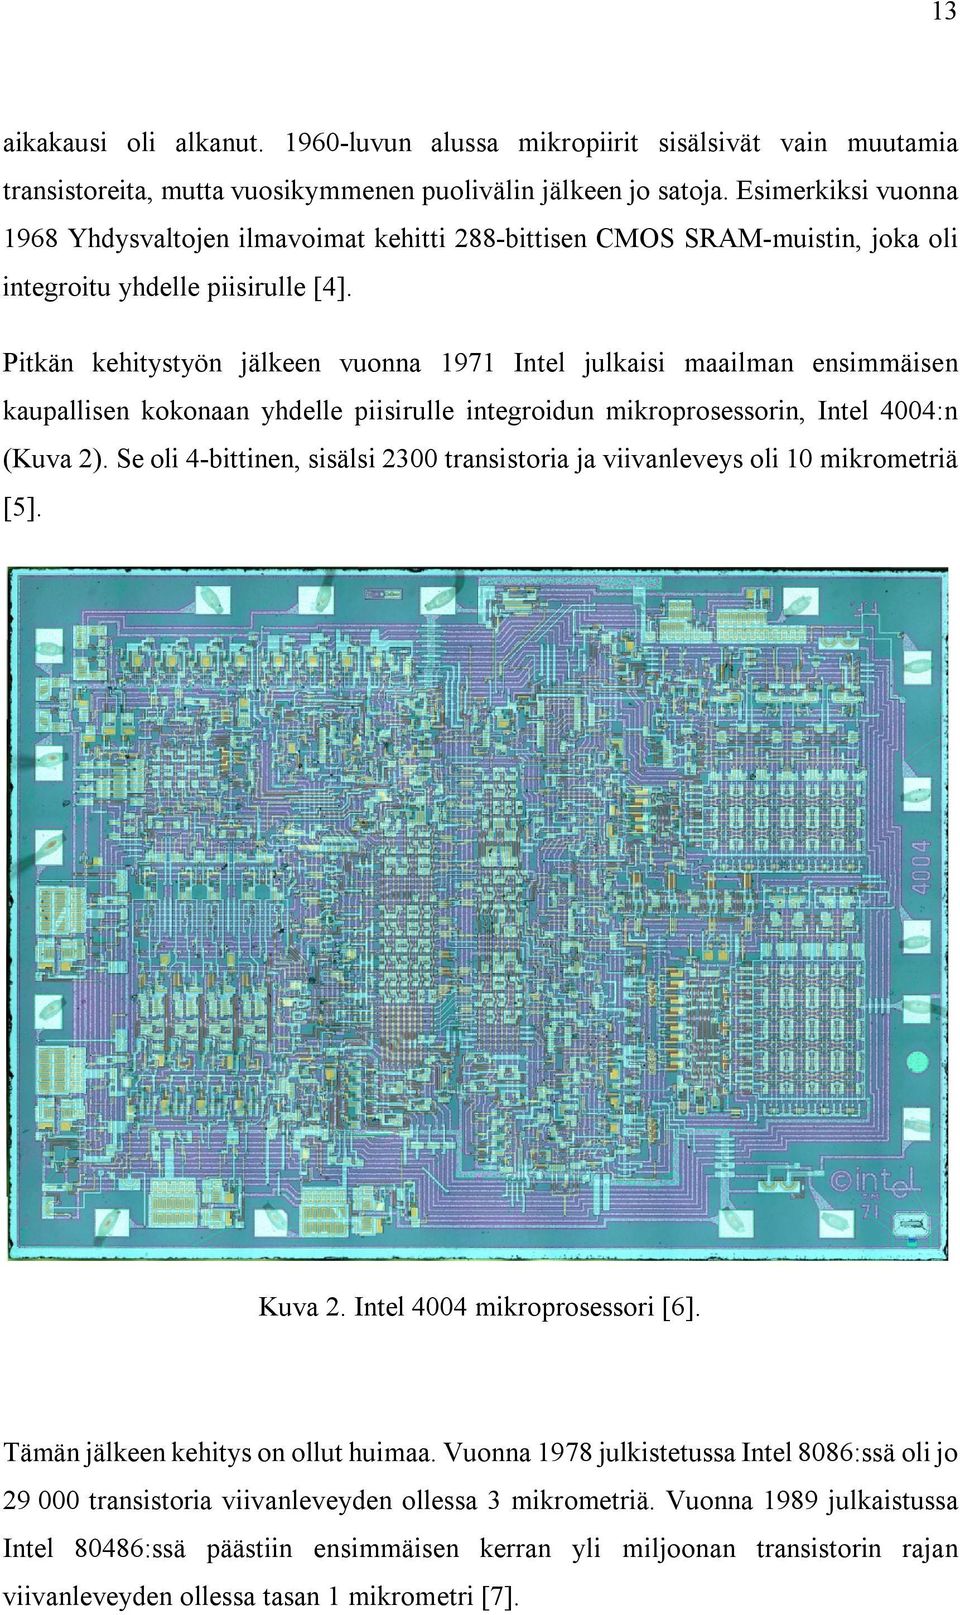 Pitkän kehitystyön jälkeen vuonna 1971 Intel julkaisi maailman ensimmäisen kaupallisen kokonaan yhdelle piisirulle integroidun mikroprosessorin, Intel 4004:n (Kuva 2).